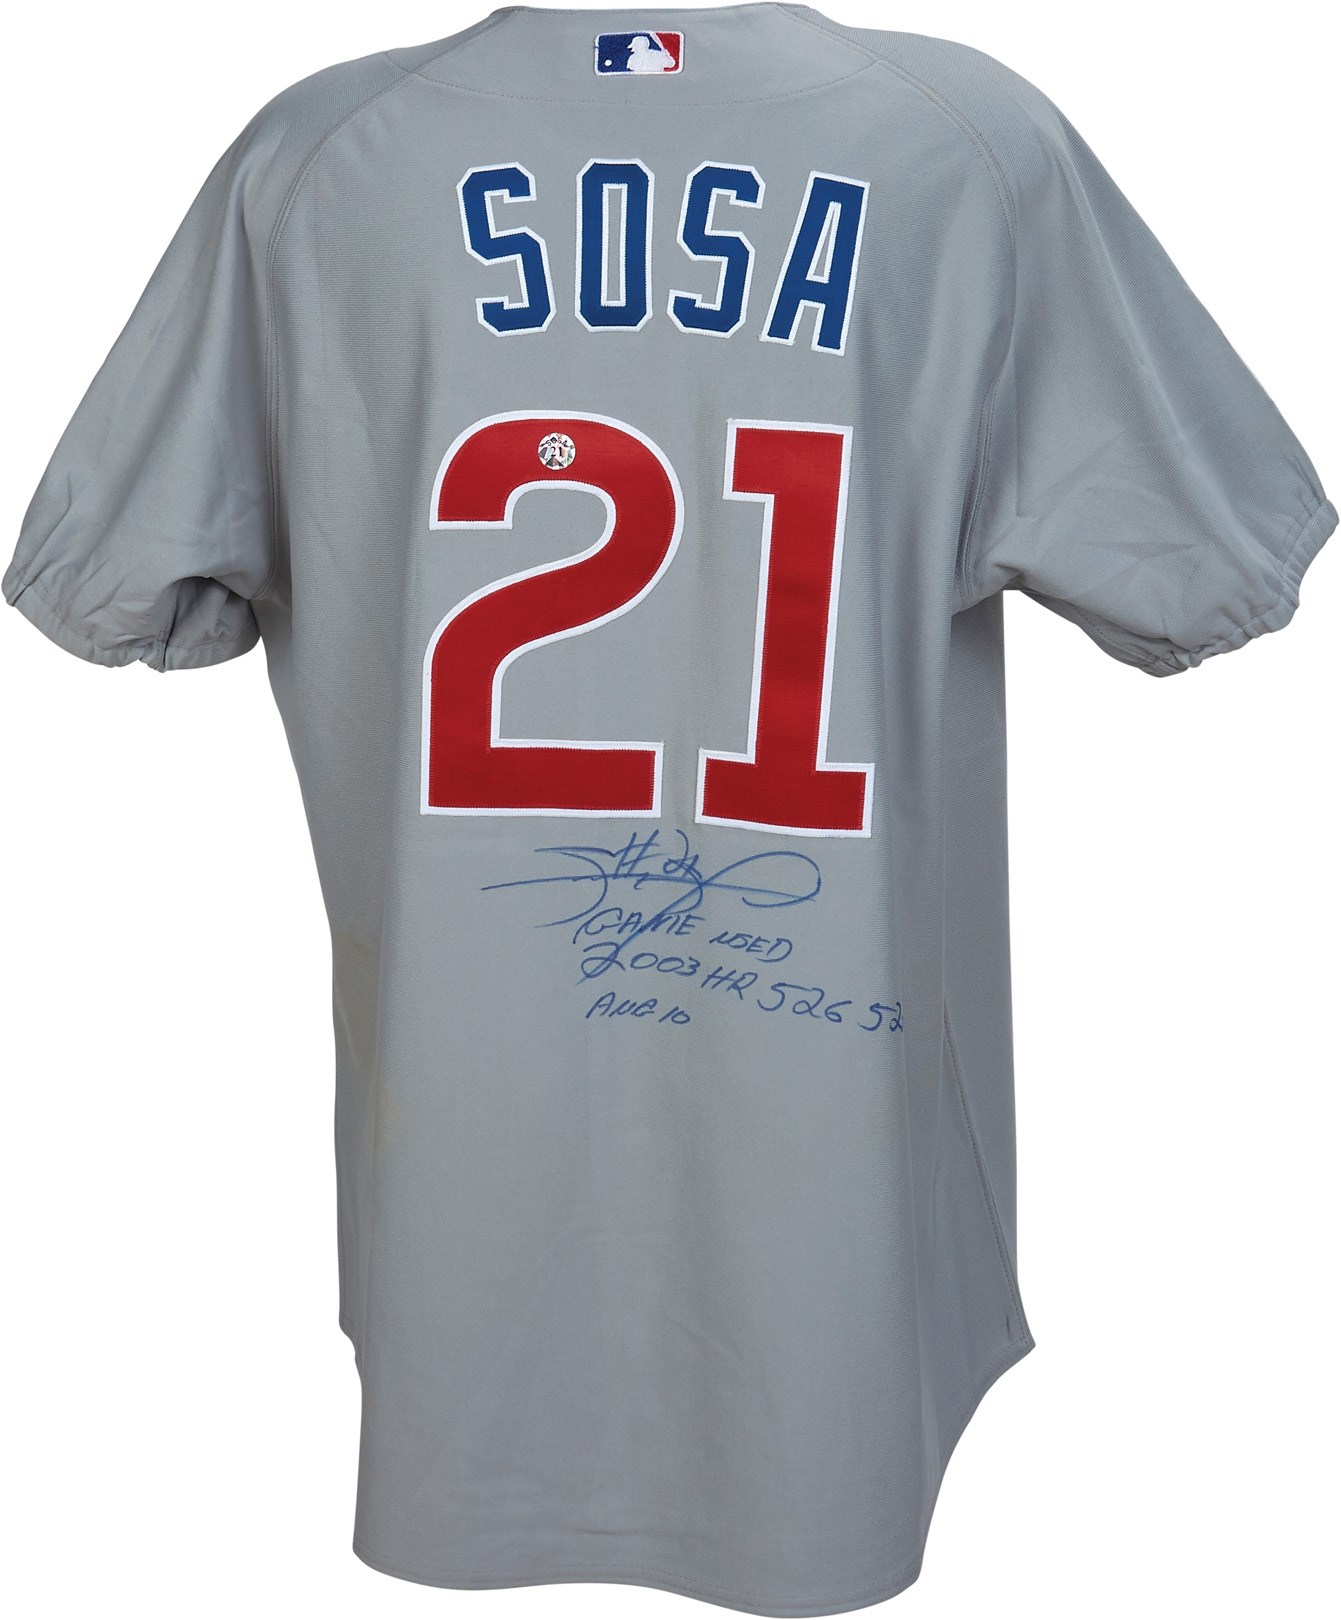 - 8/10/2003 Sammy Sosa Game Worn Jersey Career Home Runs 526 & 527 (PSA)